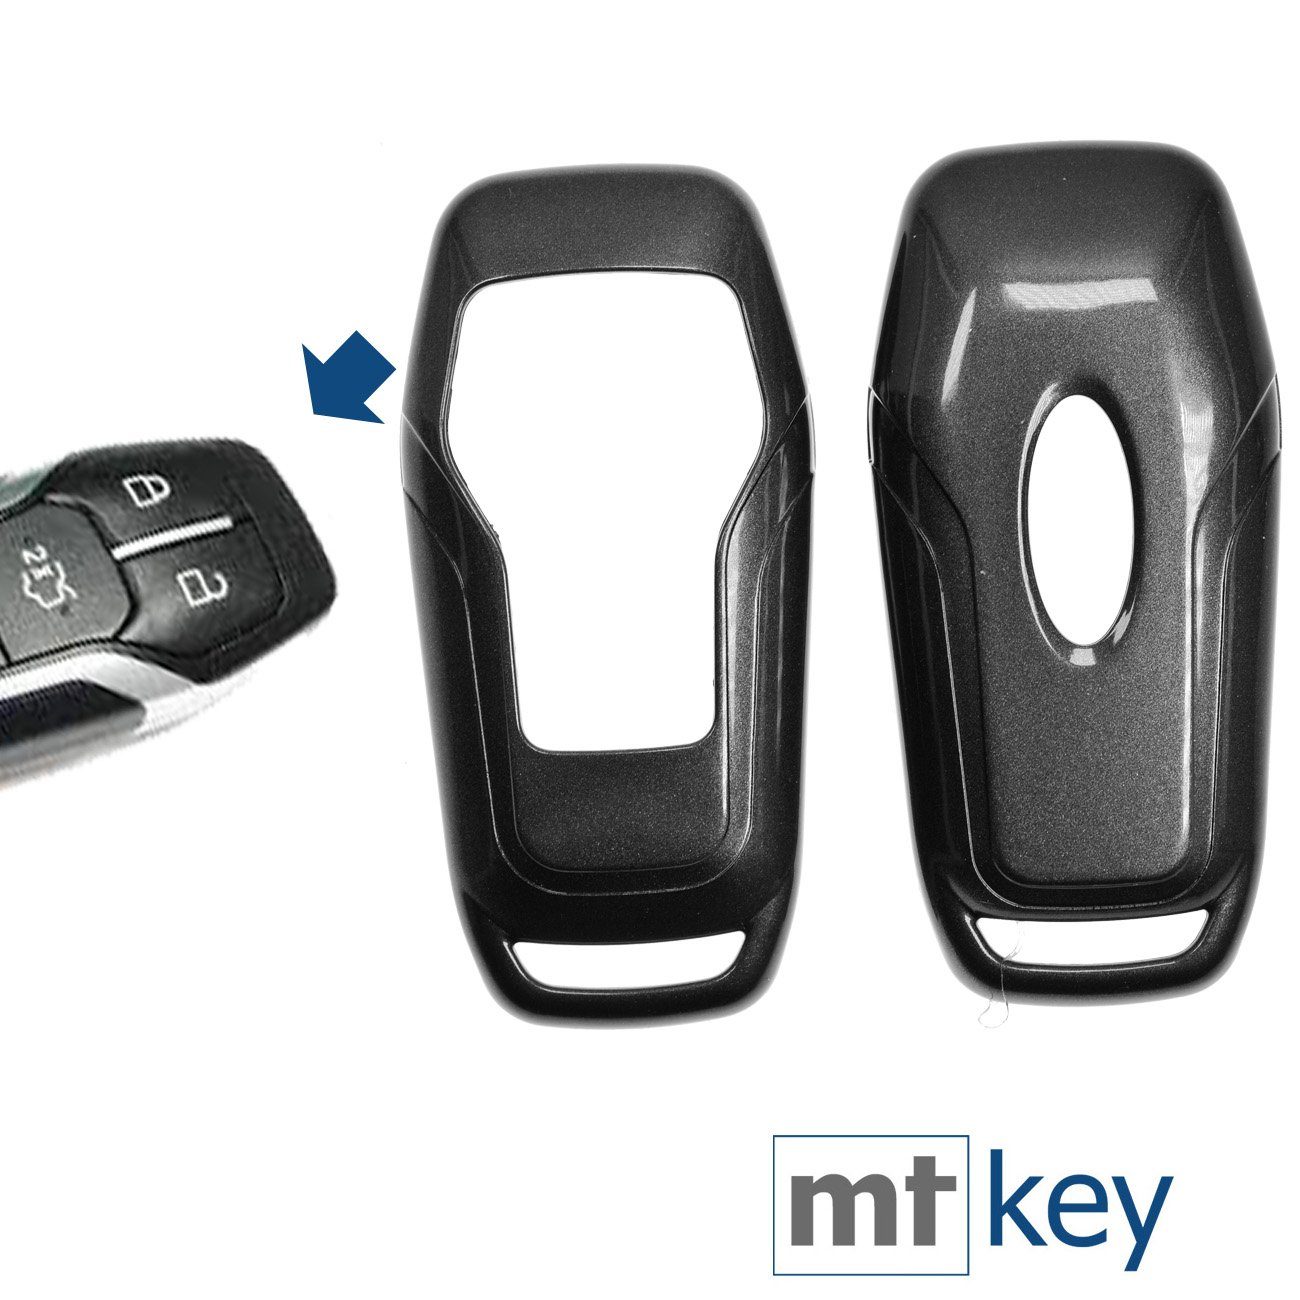 mt-key Schlüsseltasche Autoschlüssel Hardcover Schutzhülle Metallic Grau, für Ford Mustang Explorer Edge Fusion KEYLESS SMARTKEY